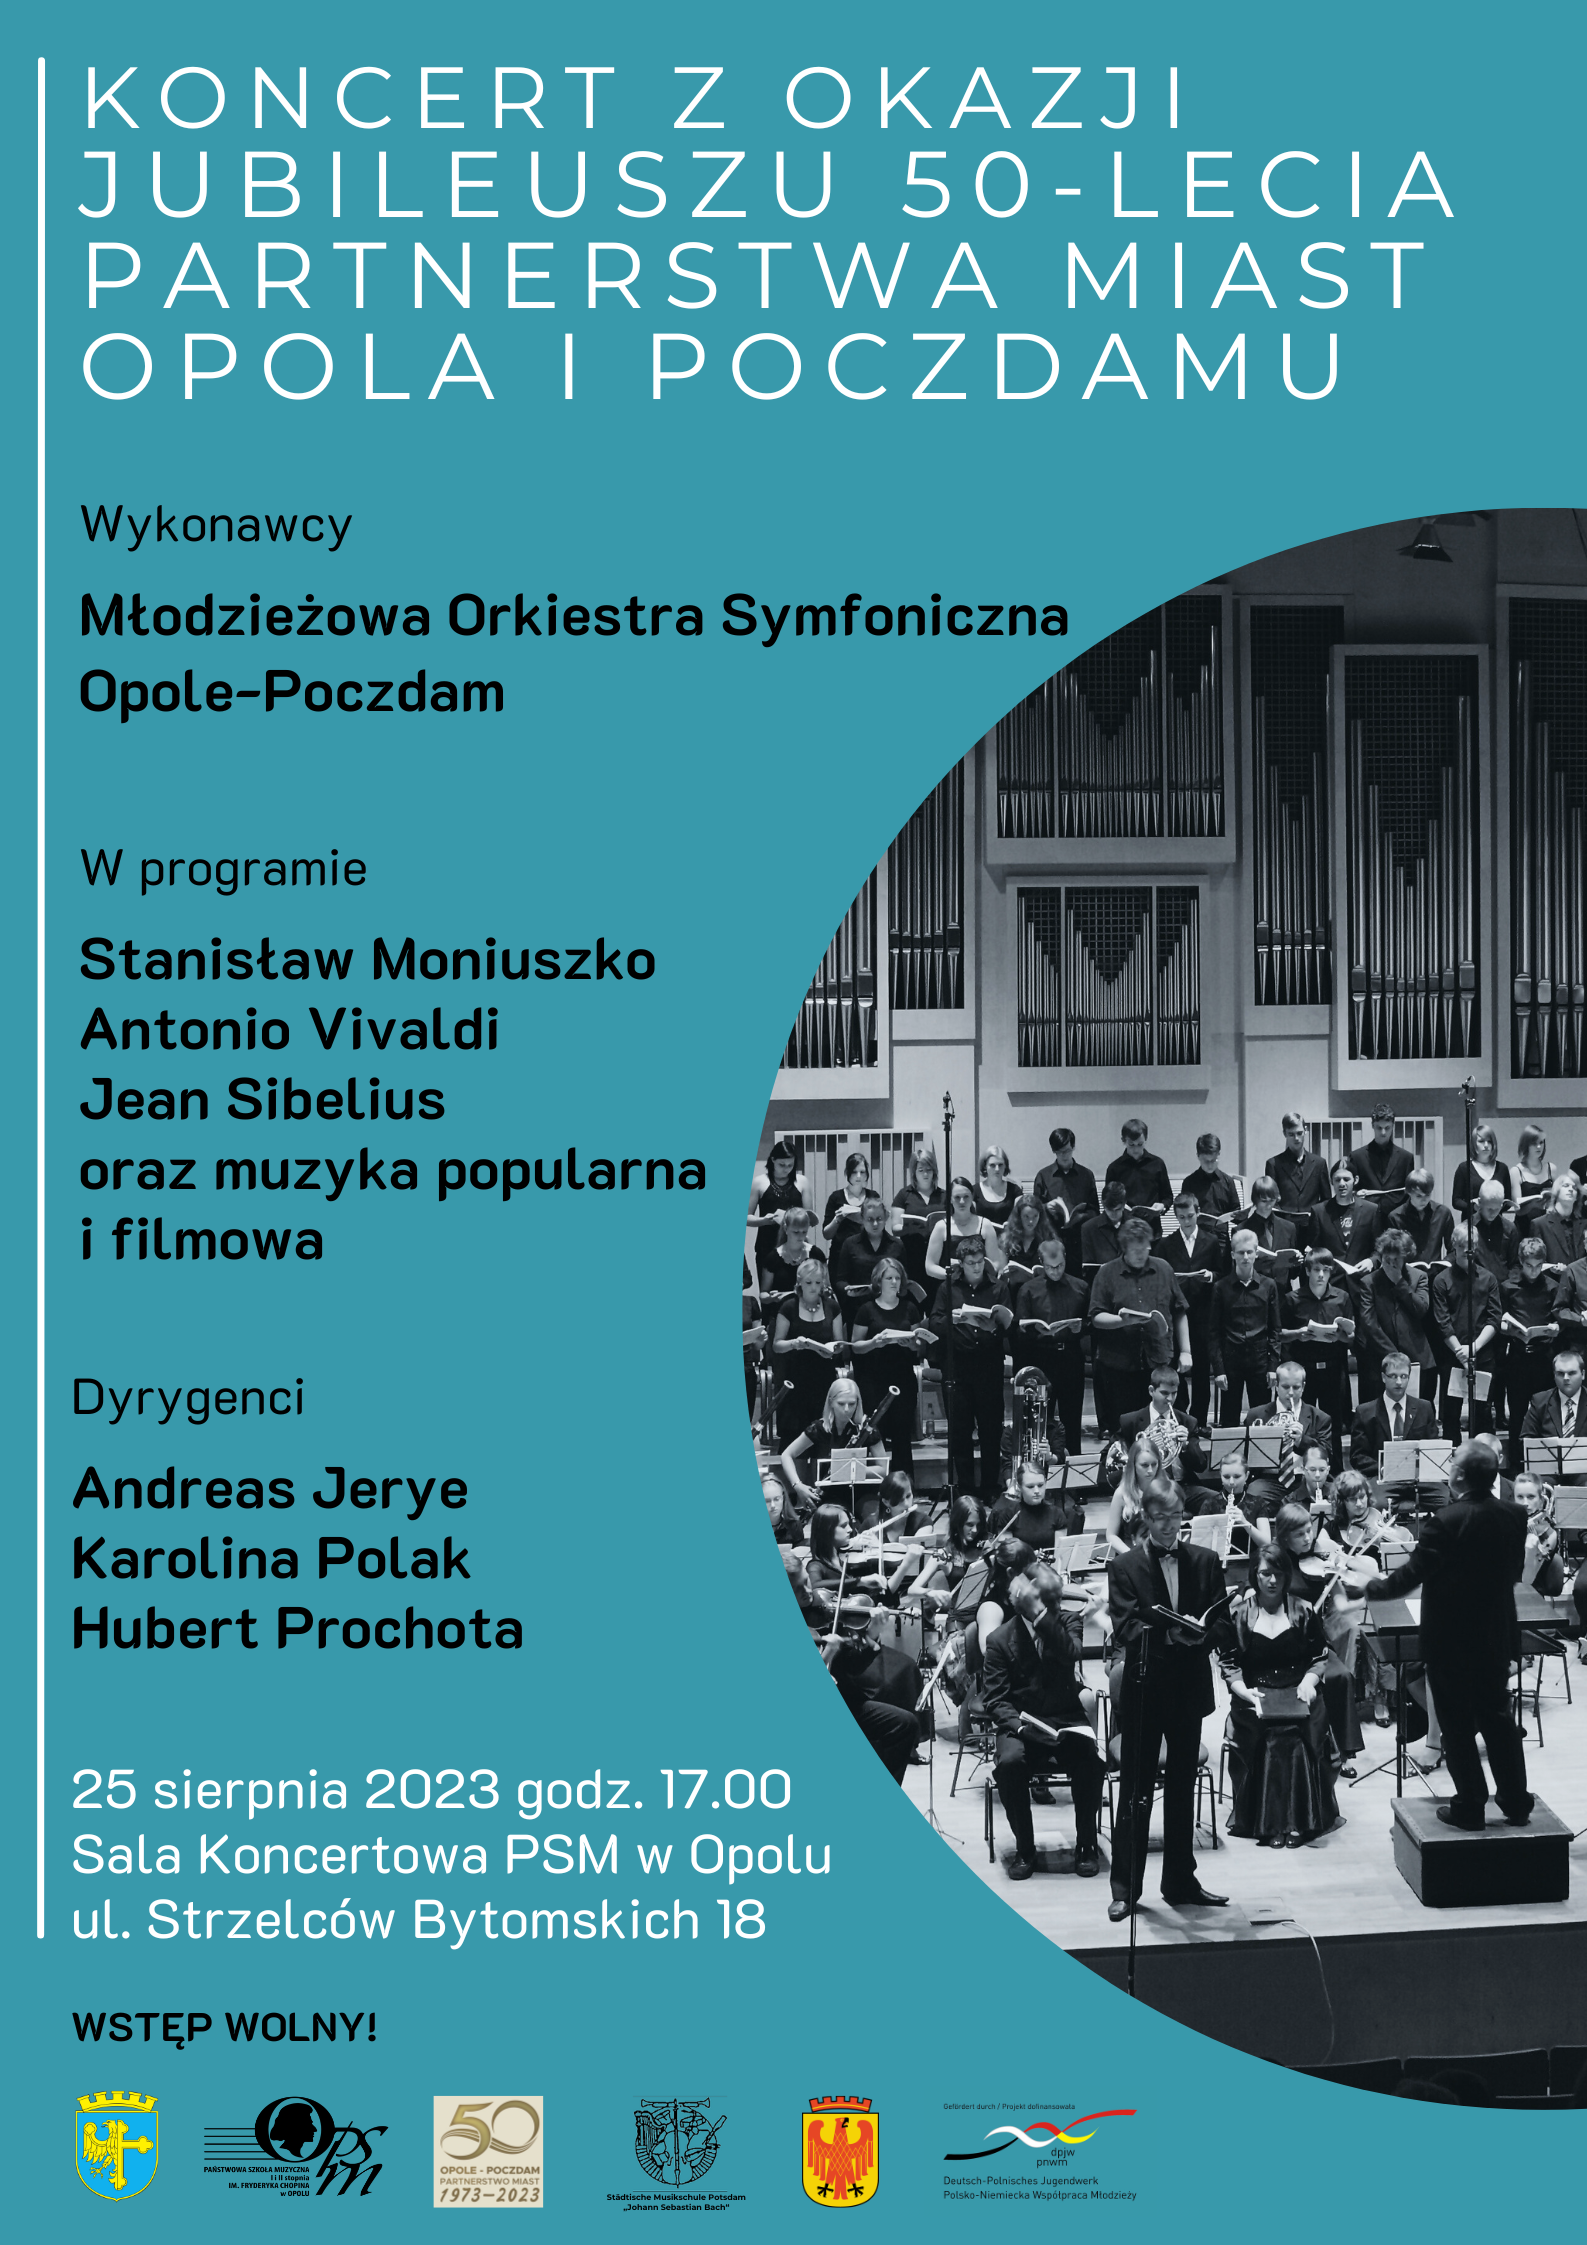 Koncert z okazji Jubileuszu Partnerstwa Miast Opola i Poczdamu